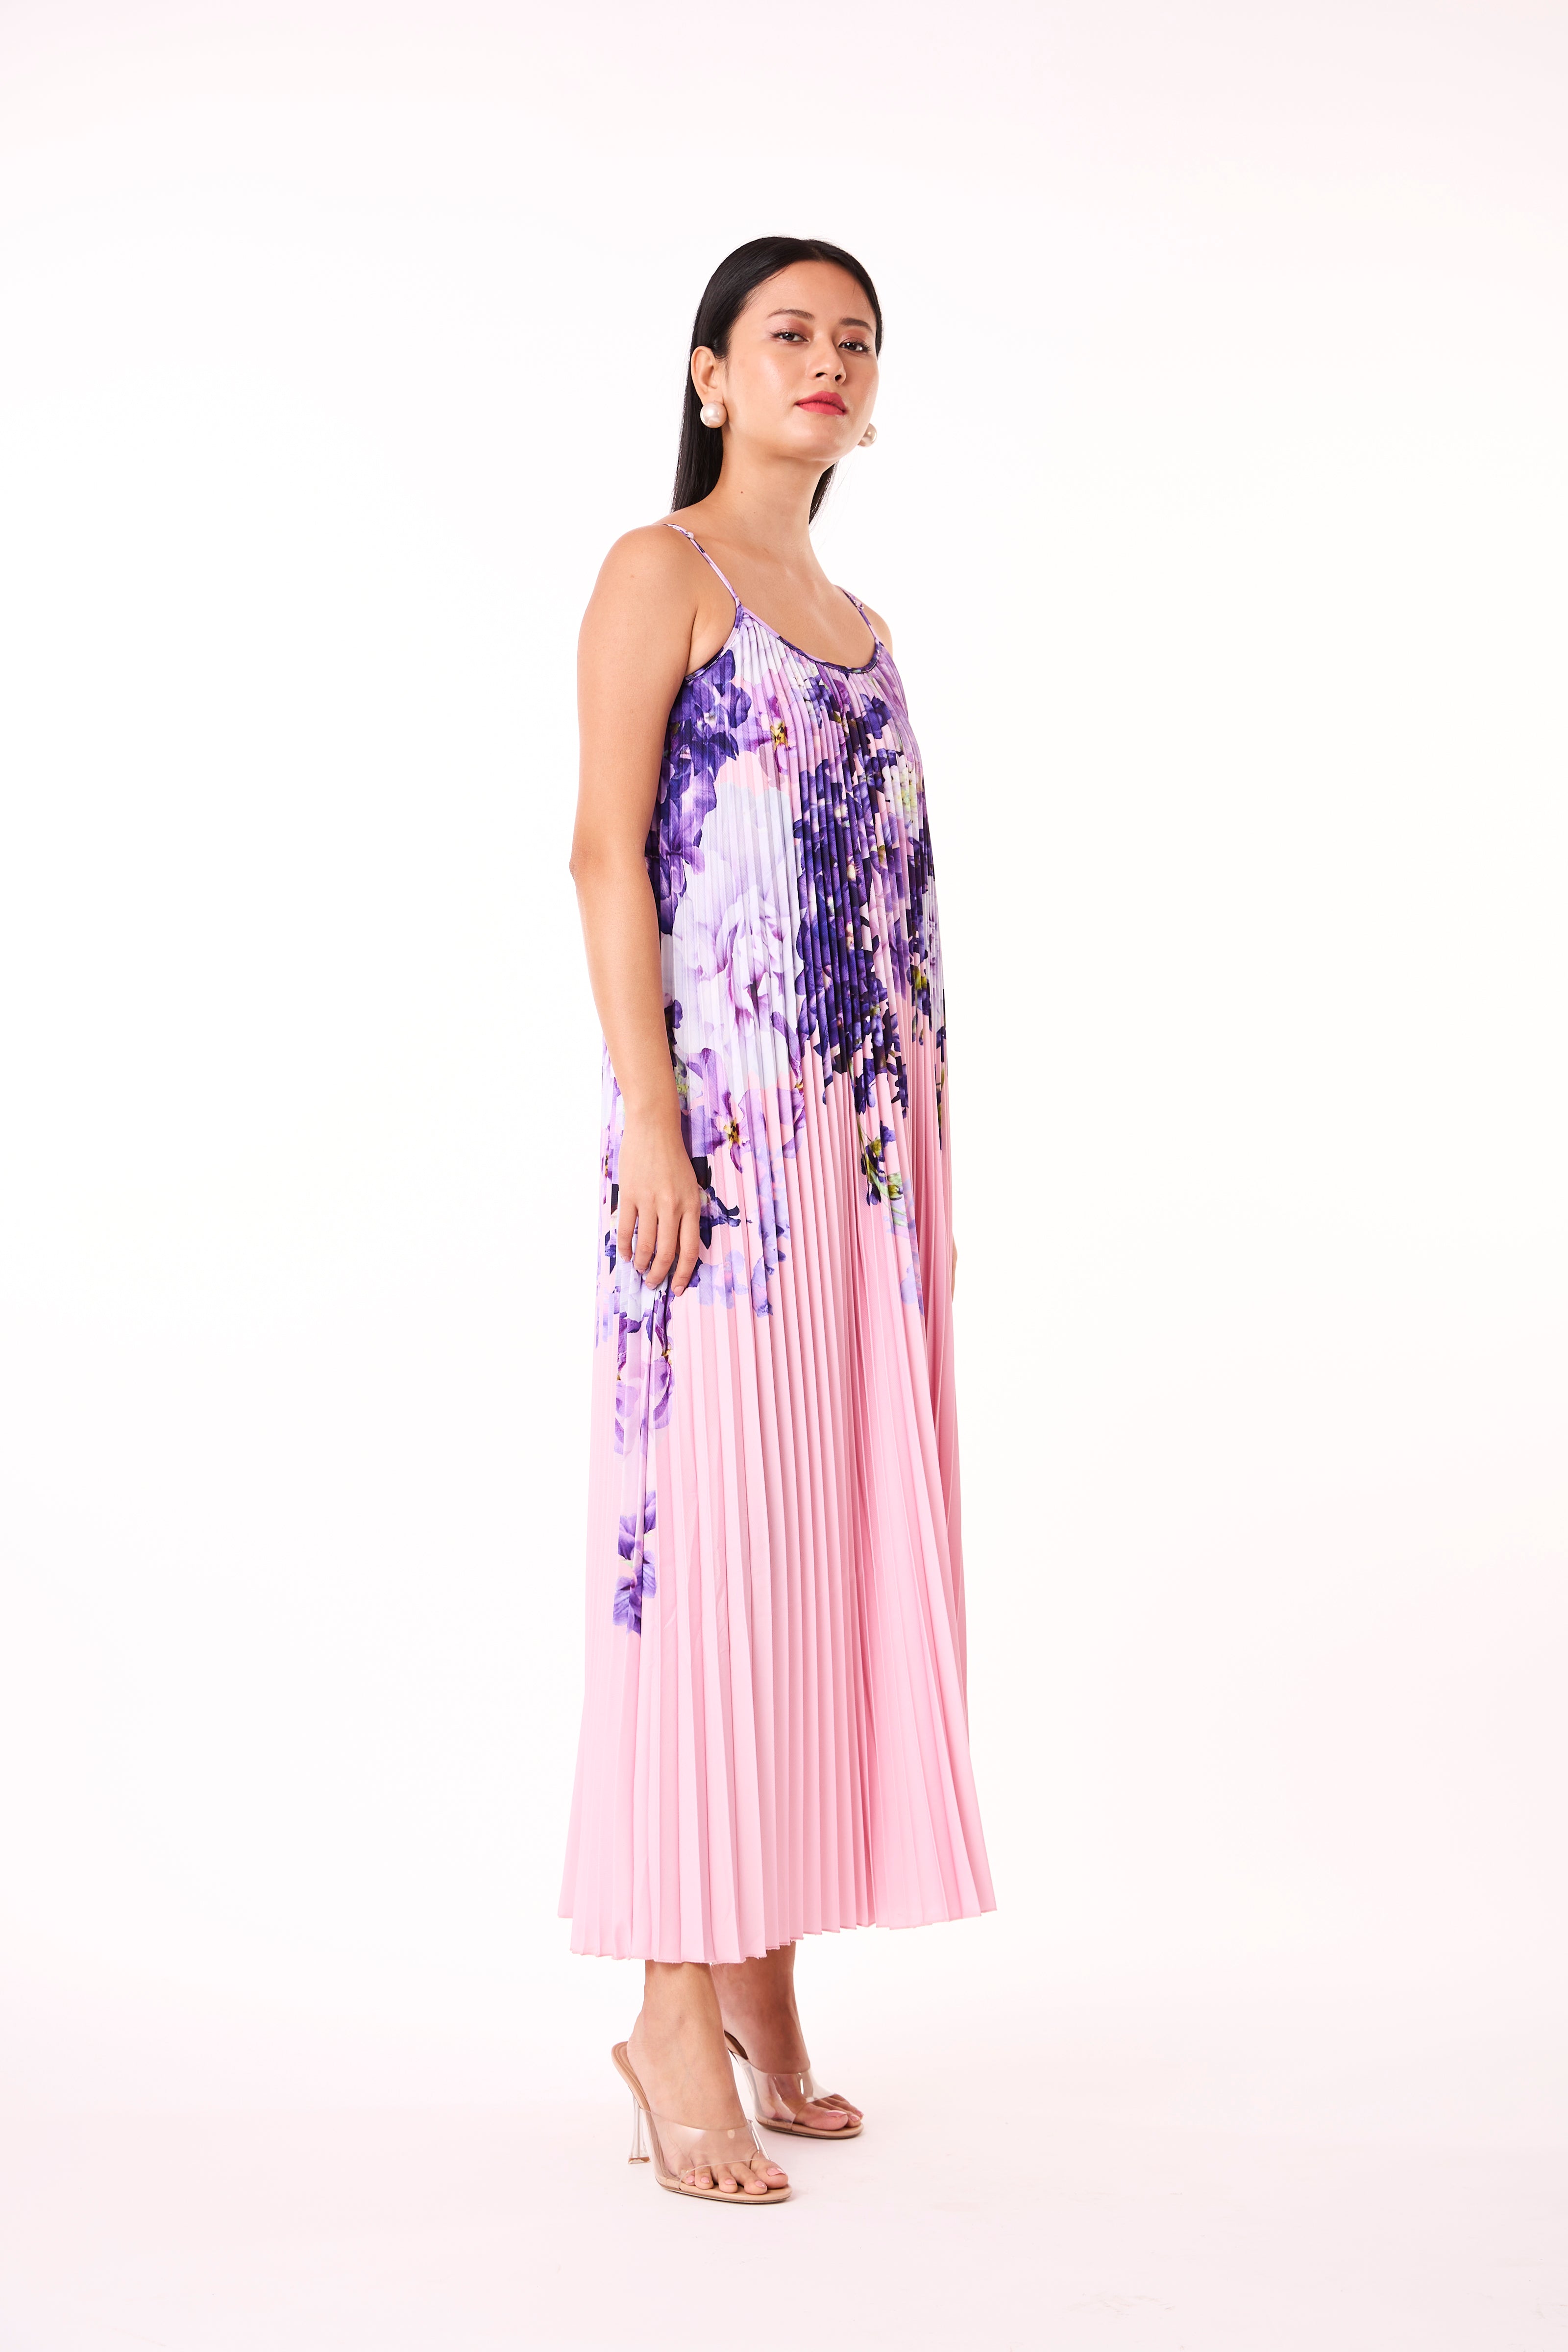 Olivia Floral Slip Dress - Pink